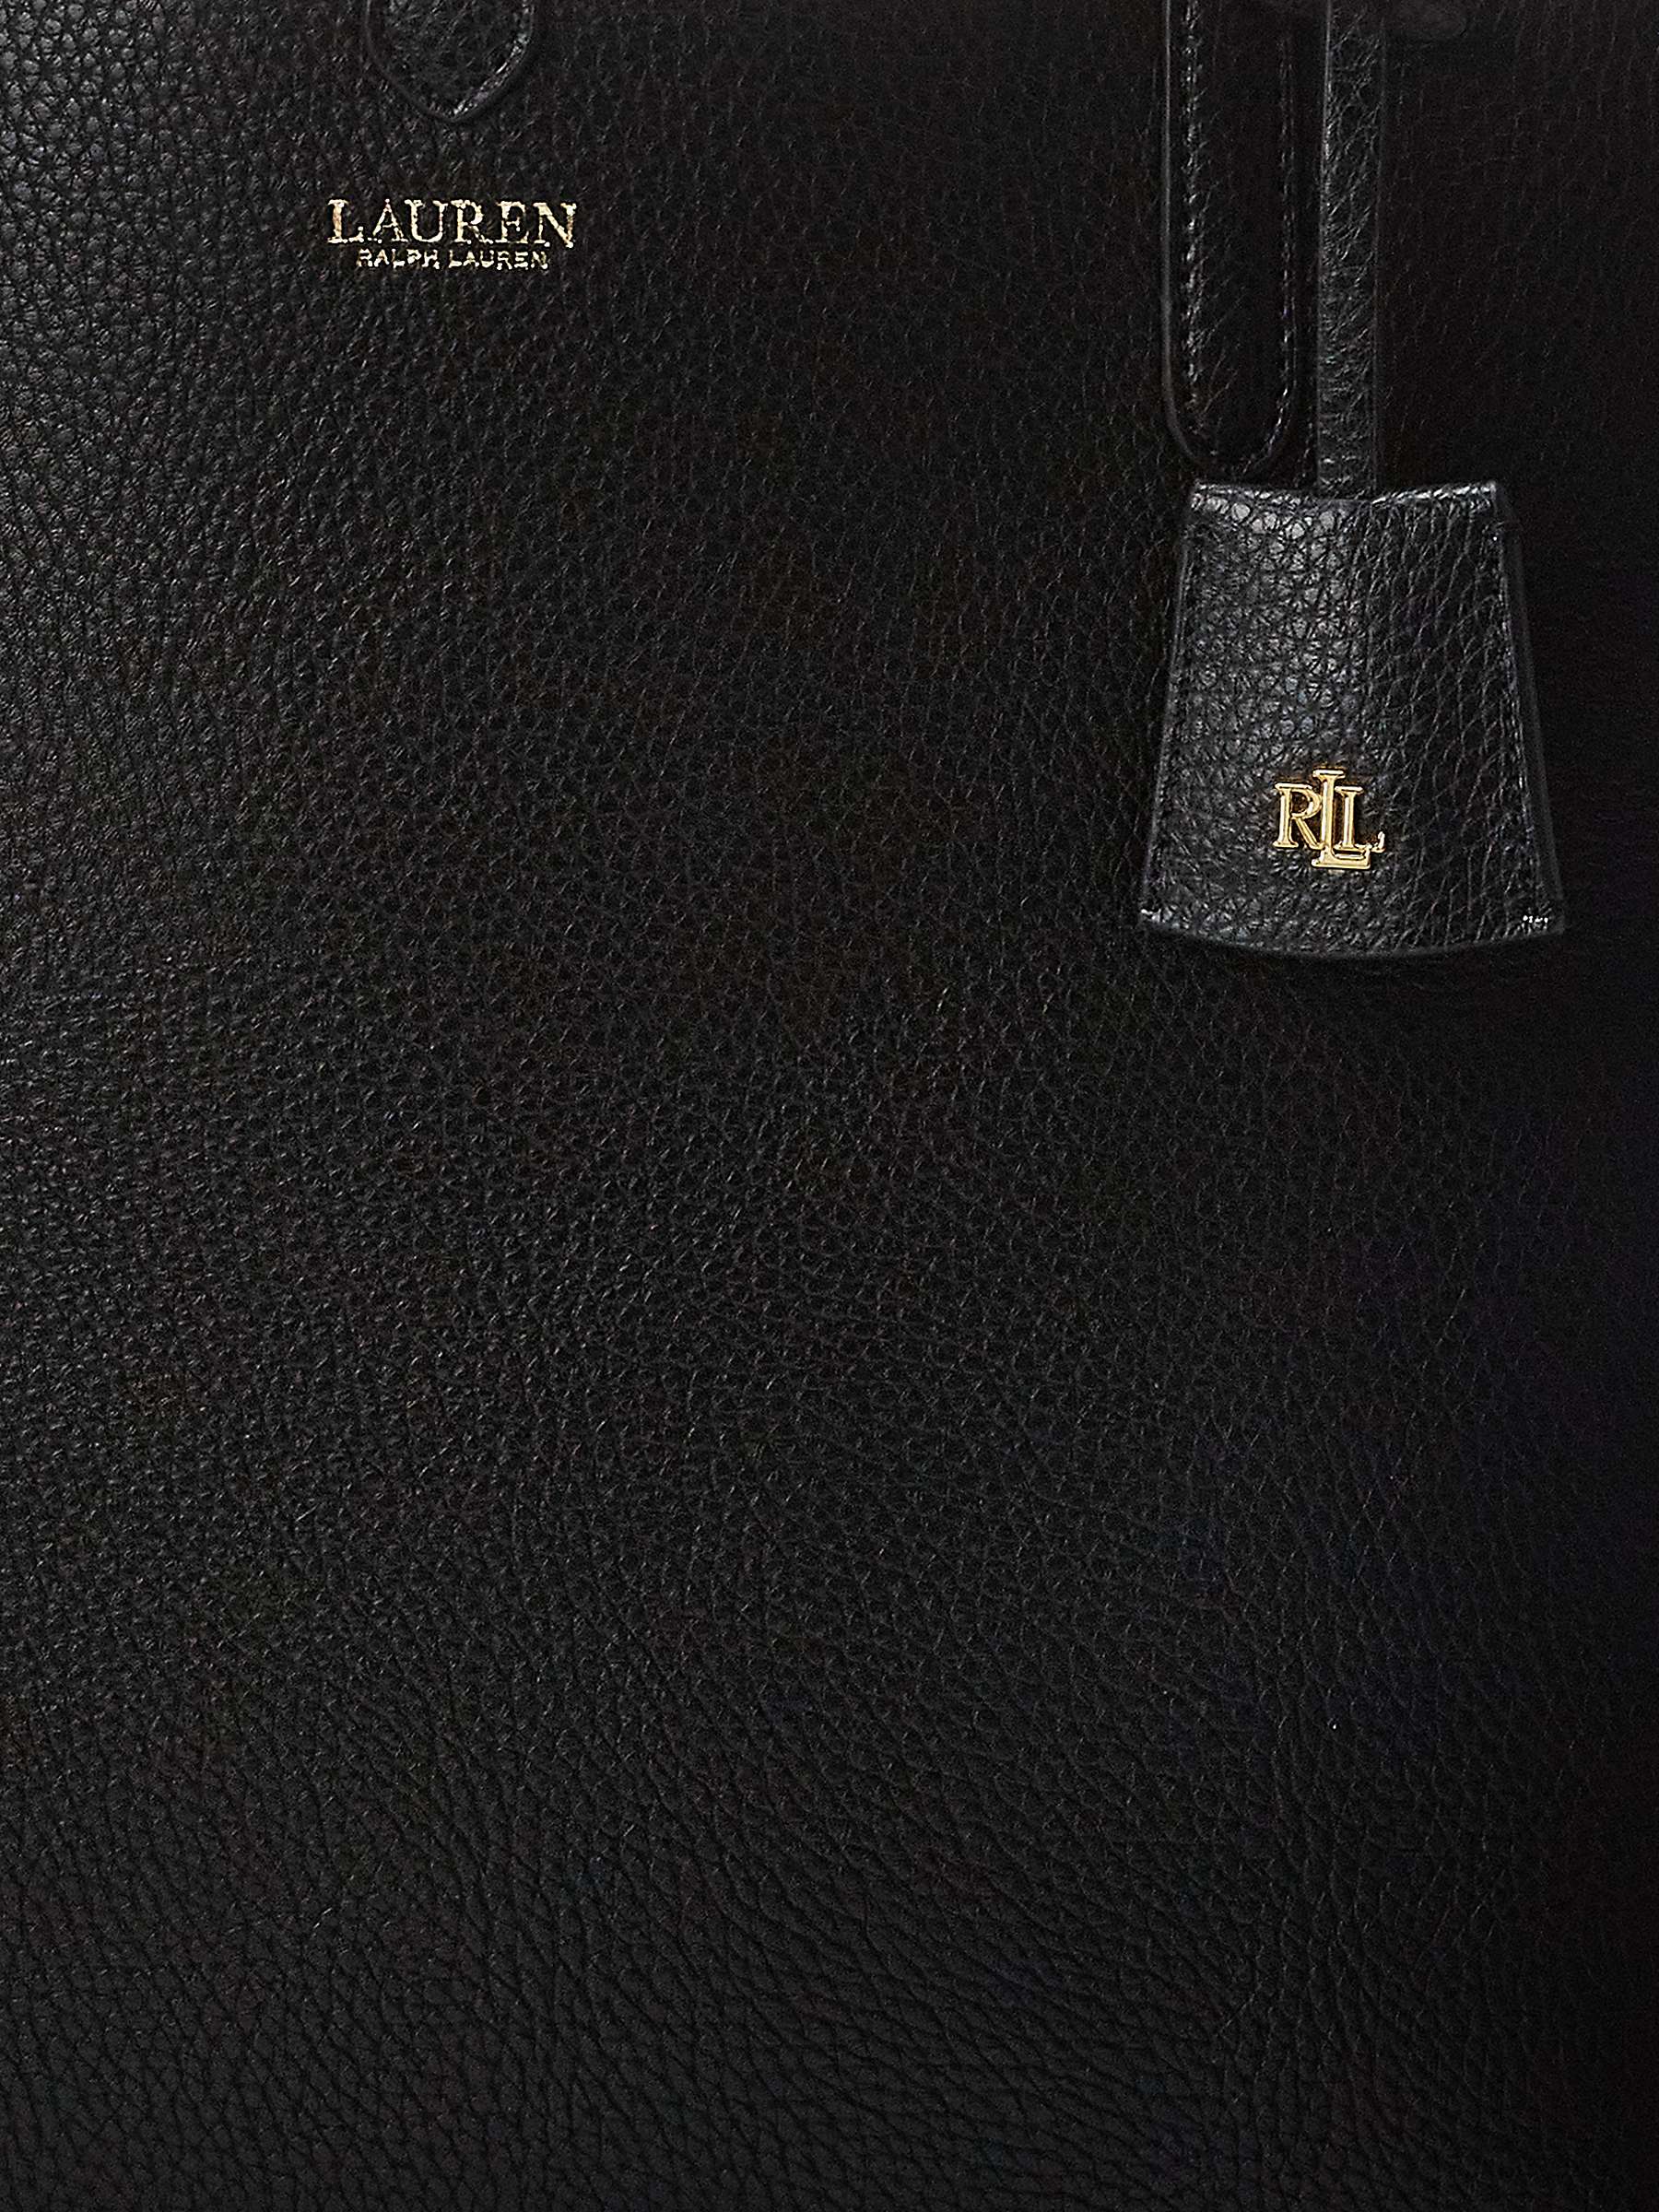 Buy Lauren Ralph Lauren Reversible Tote Bag Online at johnlewis.com